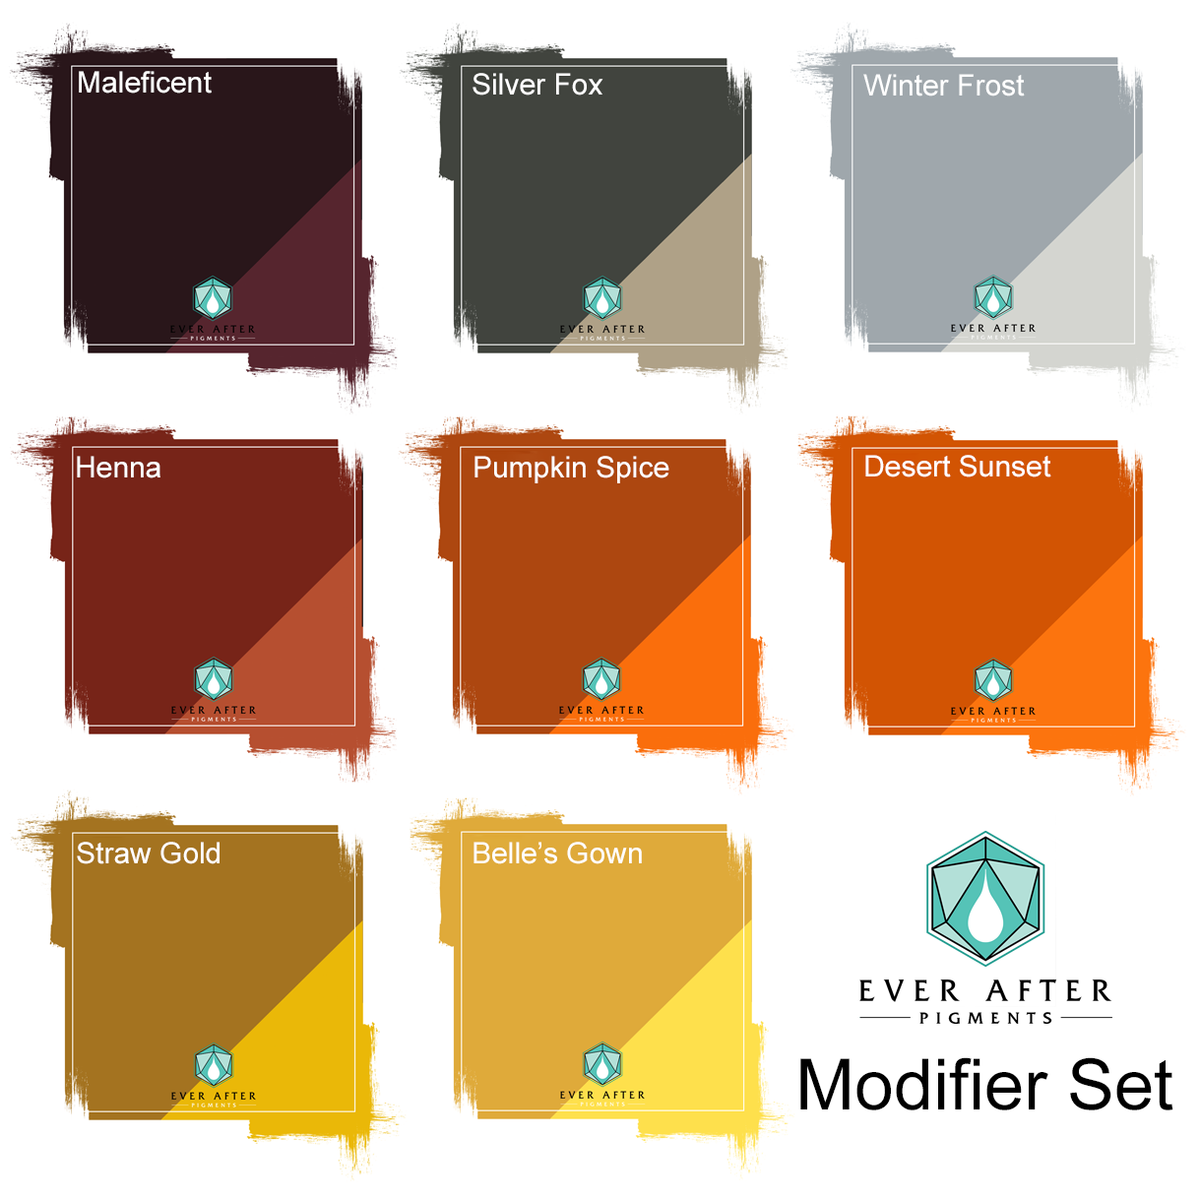 Modifier Set